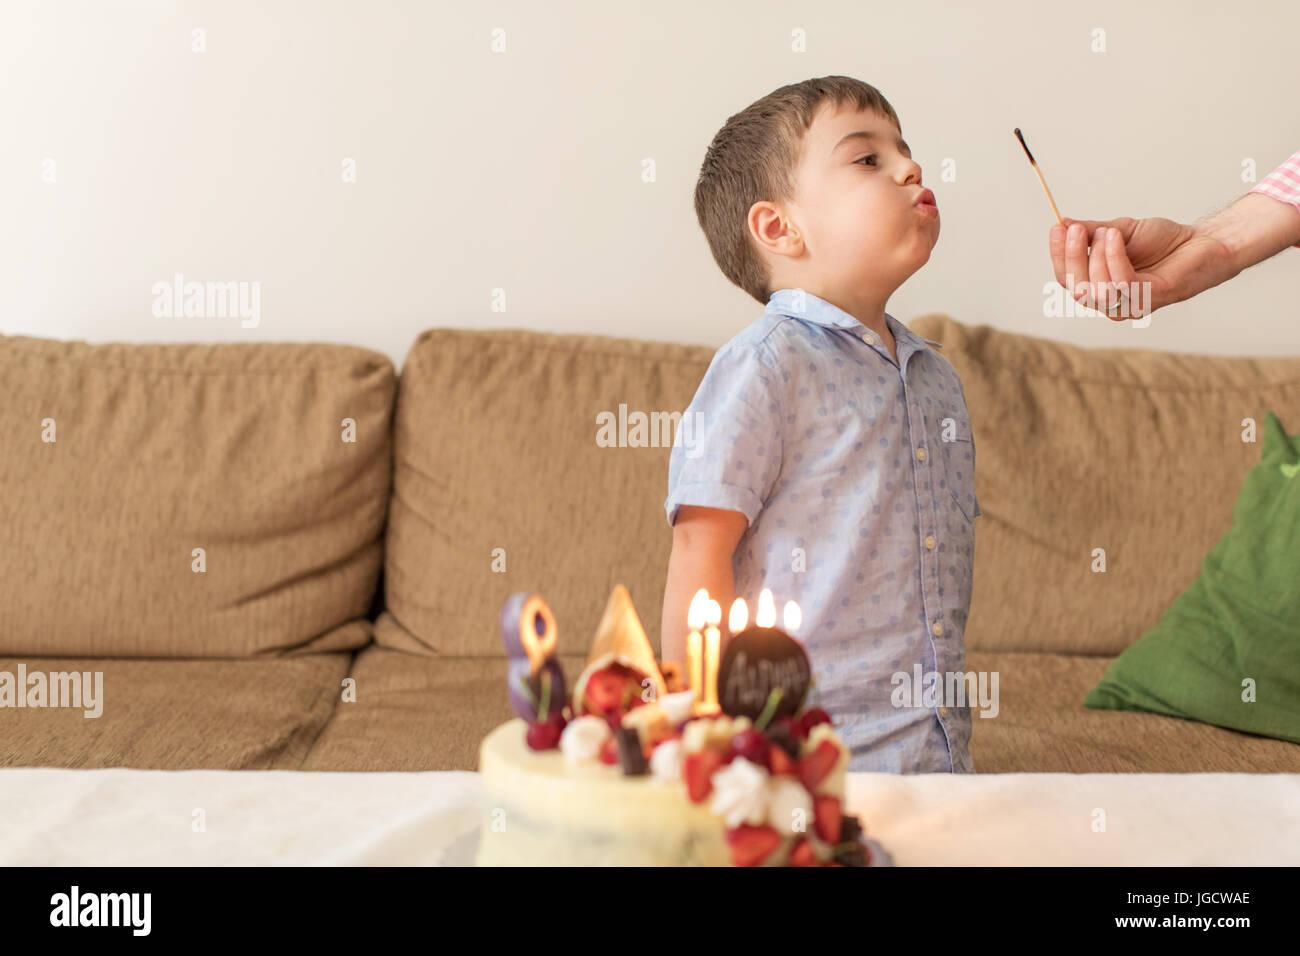 Junge Ausblasen ein Match, nachdem seine Mutter auf einer Geburtstagstorte Kerzen angezündet hat Stockfoto